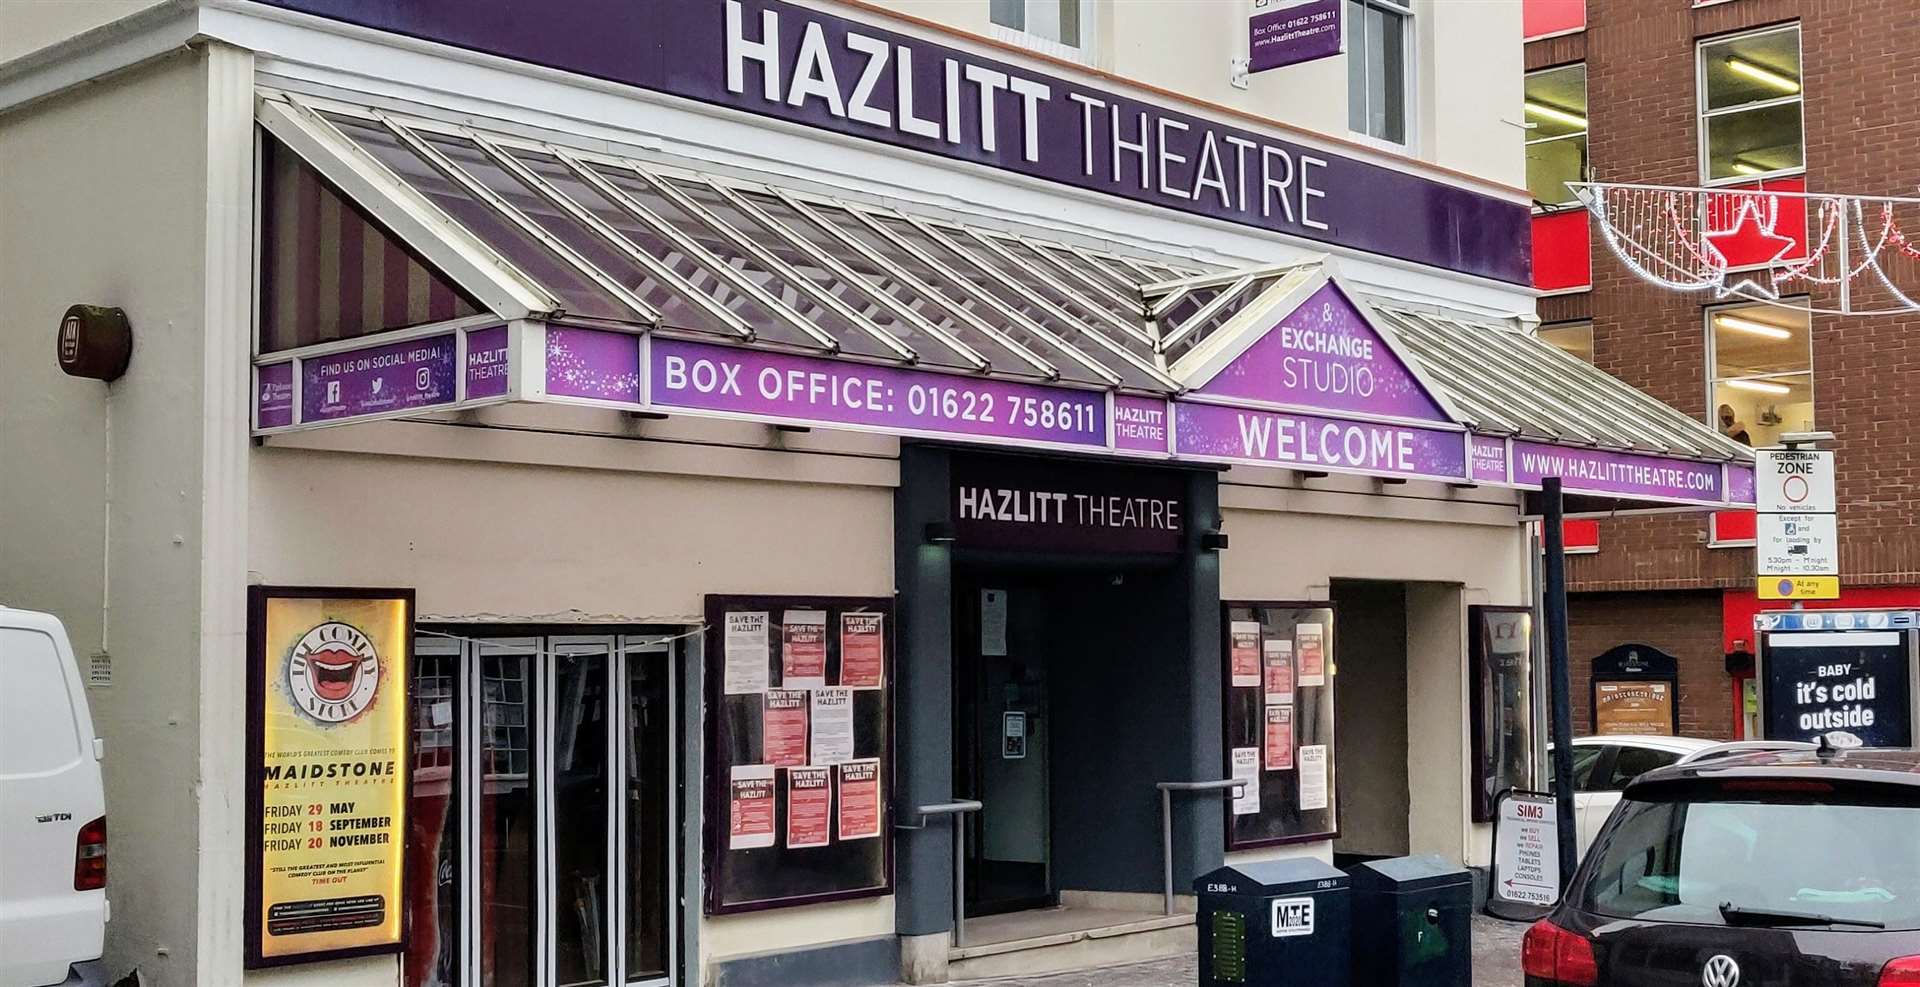 The Hazlitt Theatre in Maidstone, where Ordinary People will premiere